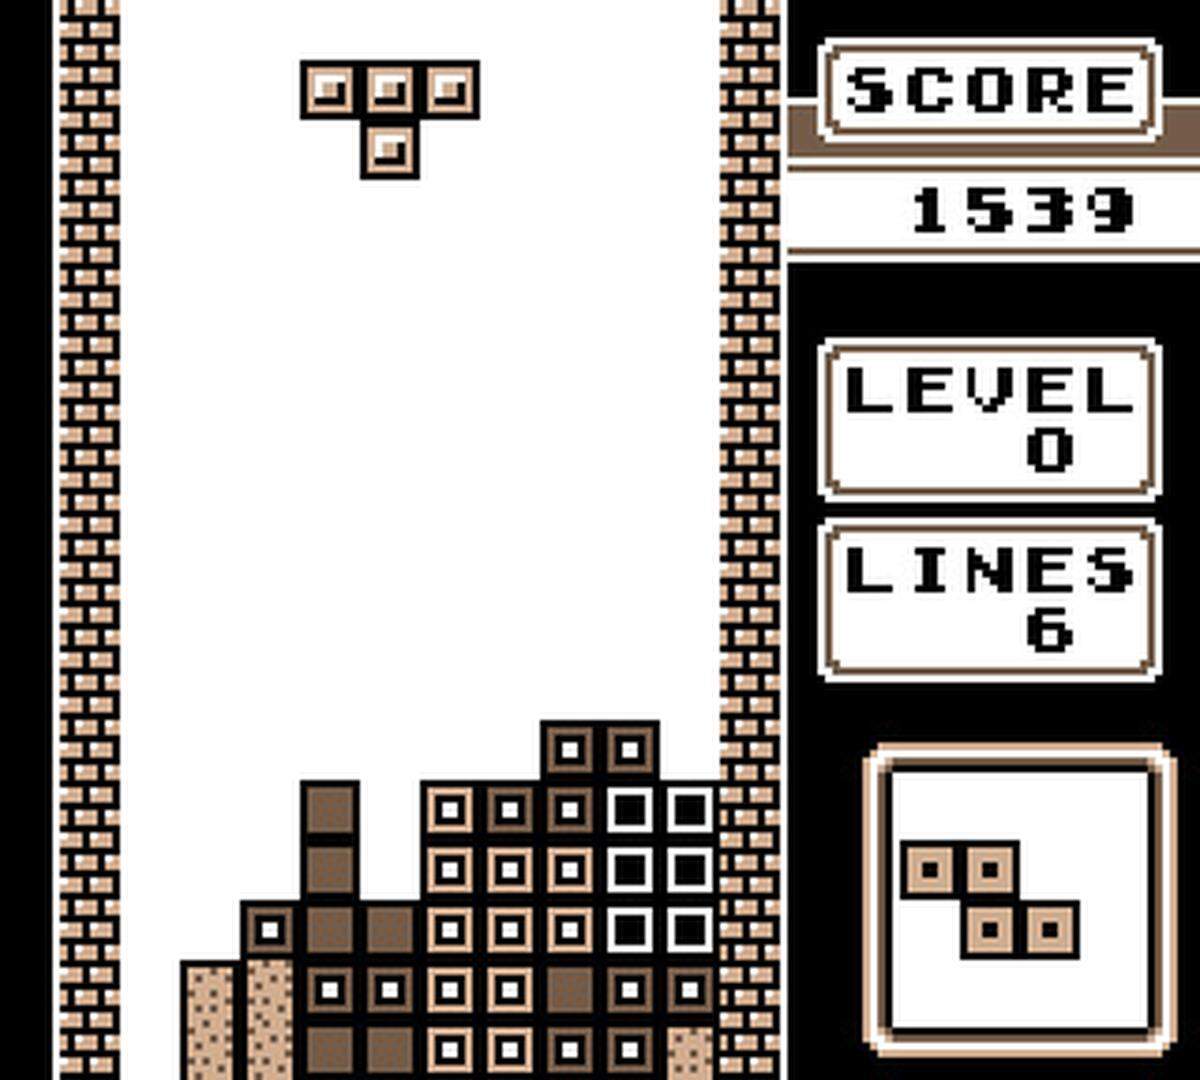 Der Rest ist Geschichte: Tetris verhalf dem Gameboy zu fulminanten Verkaufszahlen. Gleichzeitig begründete es auch den Anfang vom Ende des damals noch großen Rivalen Atari. Von dem Verlust der Lizenzrechte an Tetris erholte sich das Unternehmen nie.